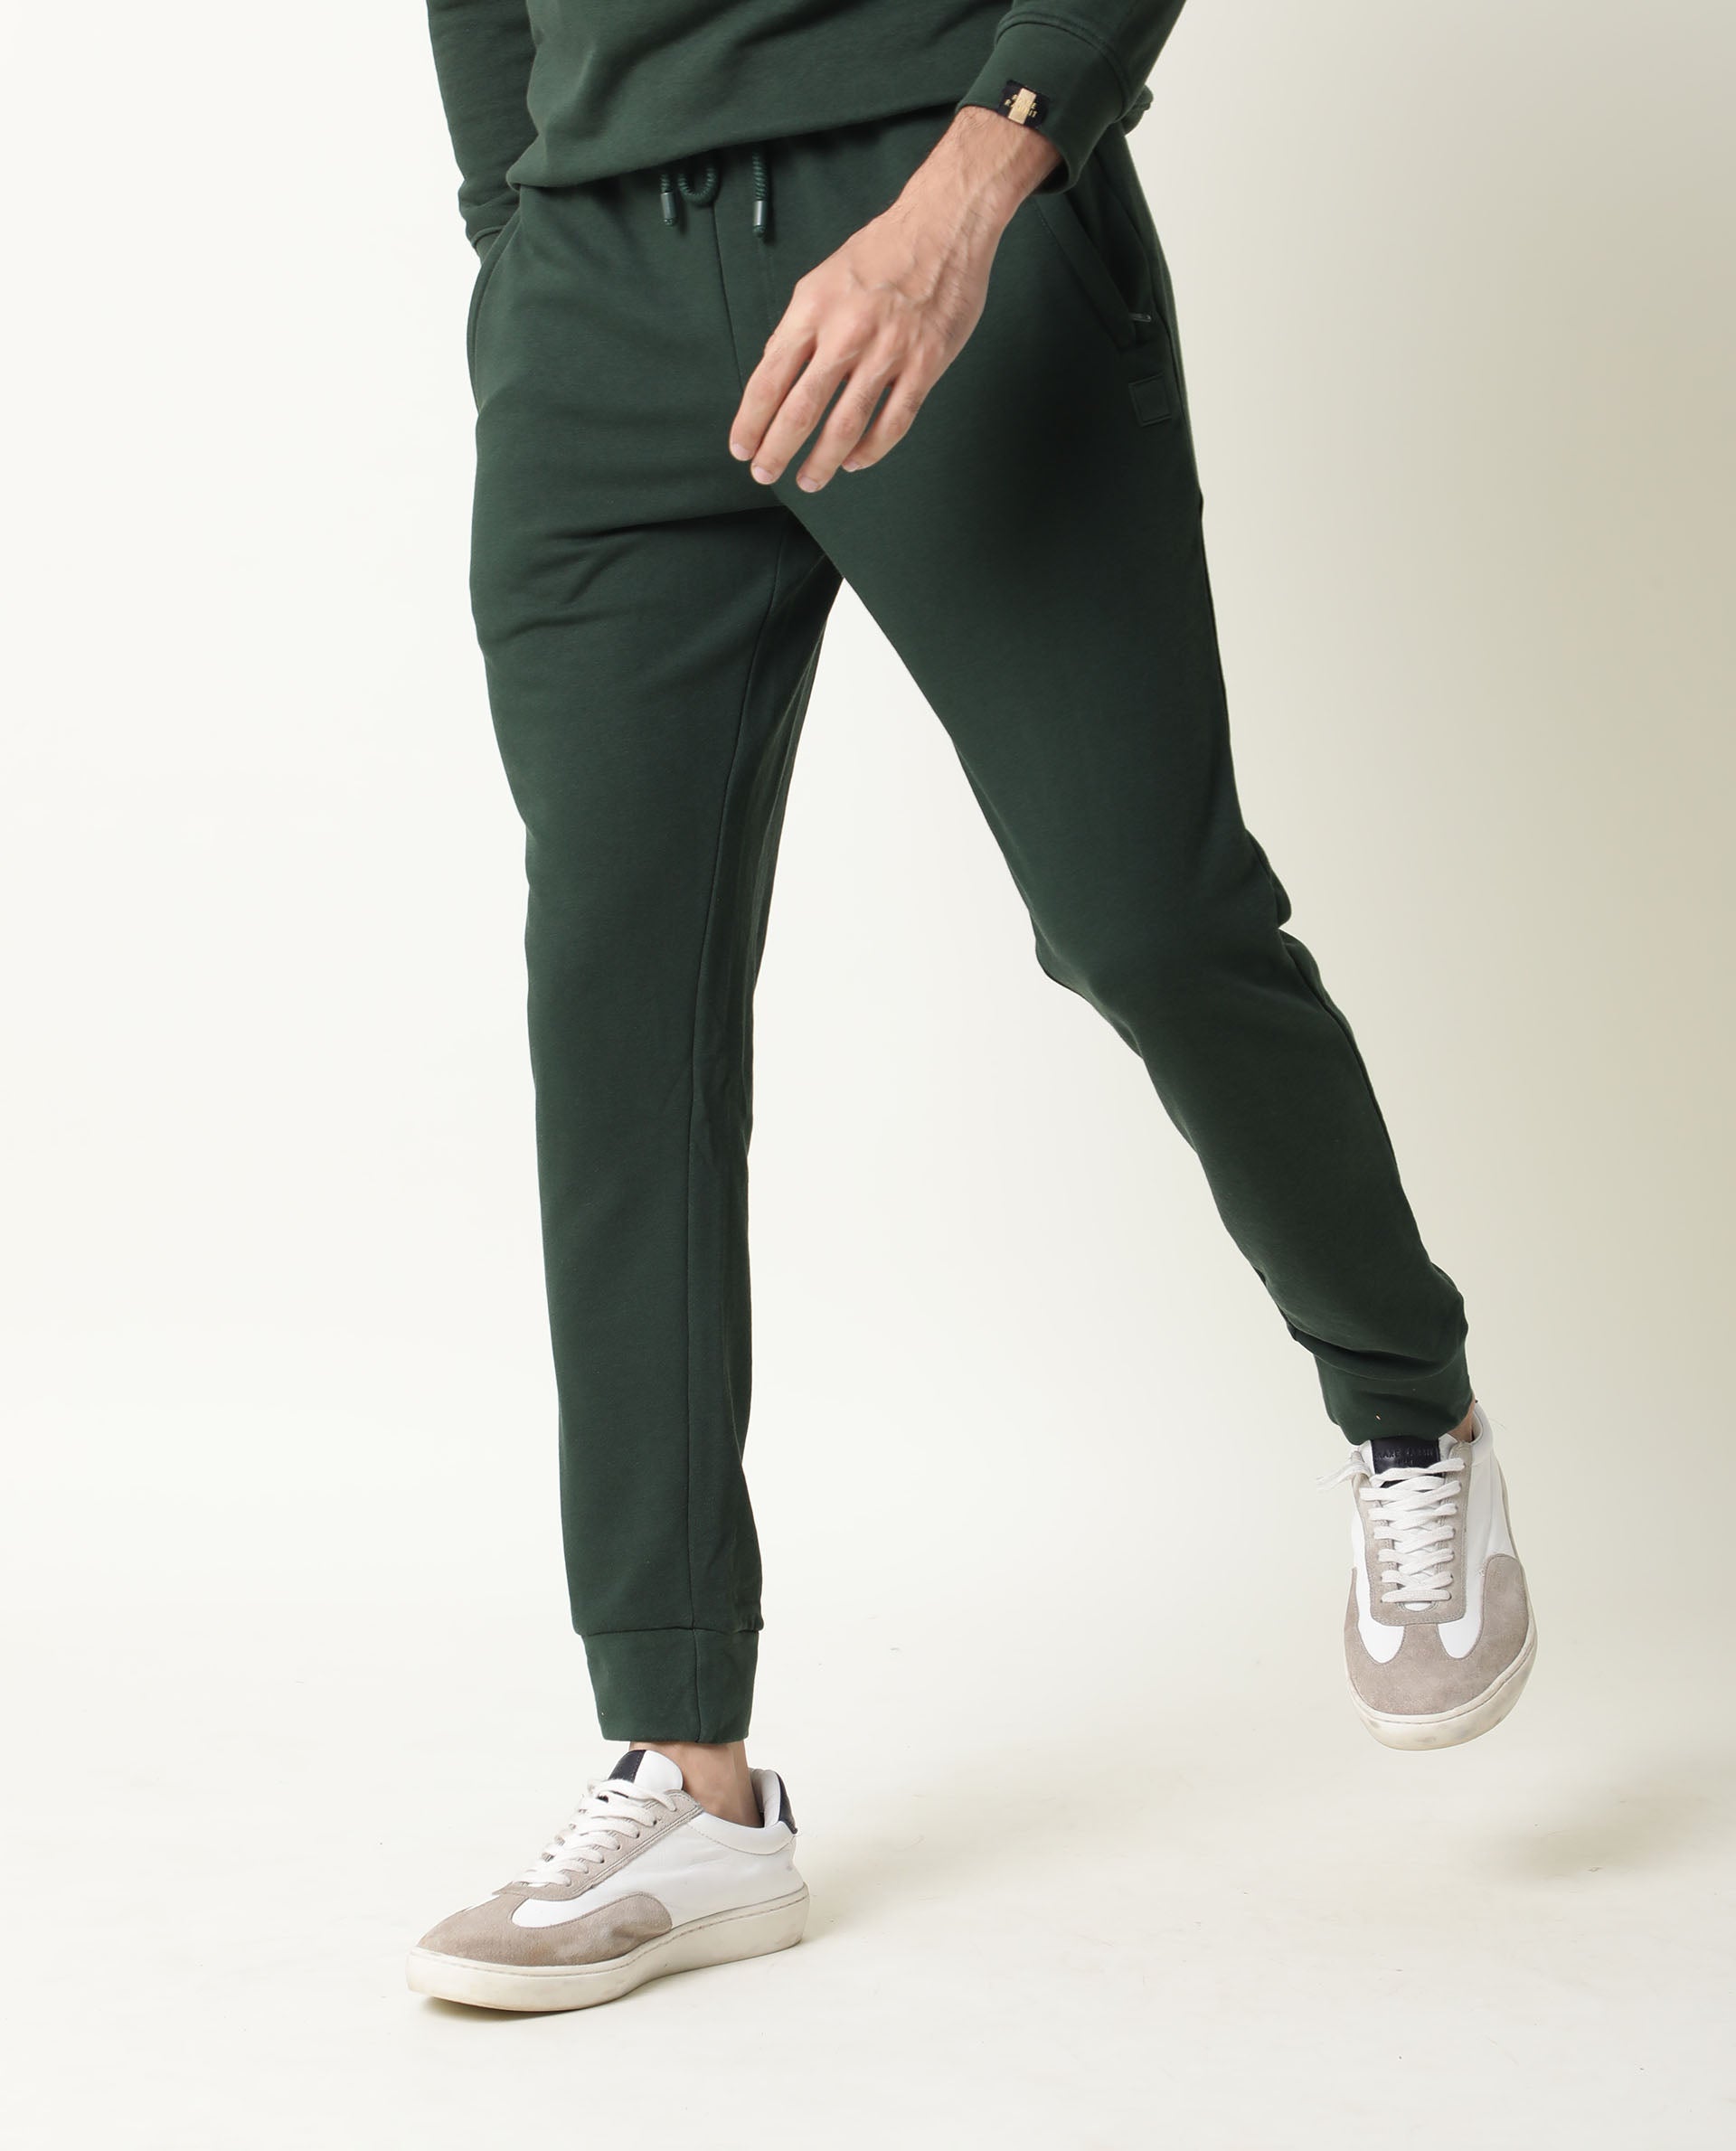 ASOS DESIGN skinny suit pants in pine green | ASOS